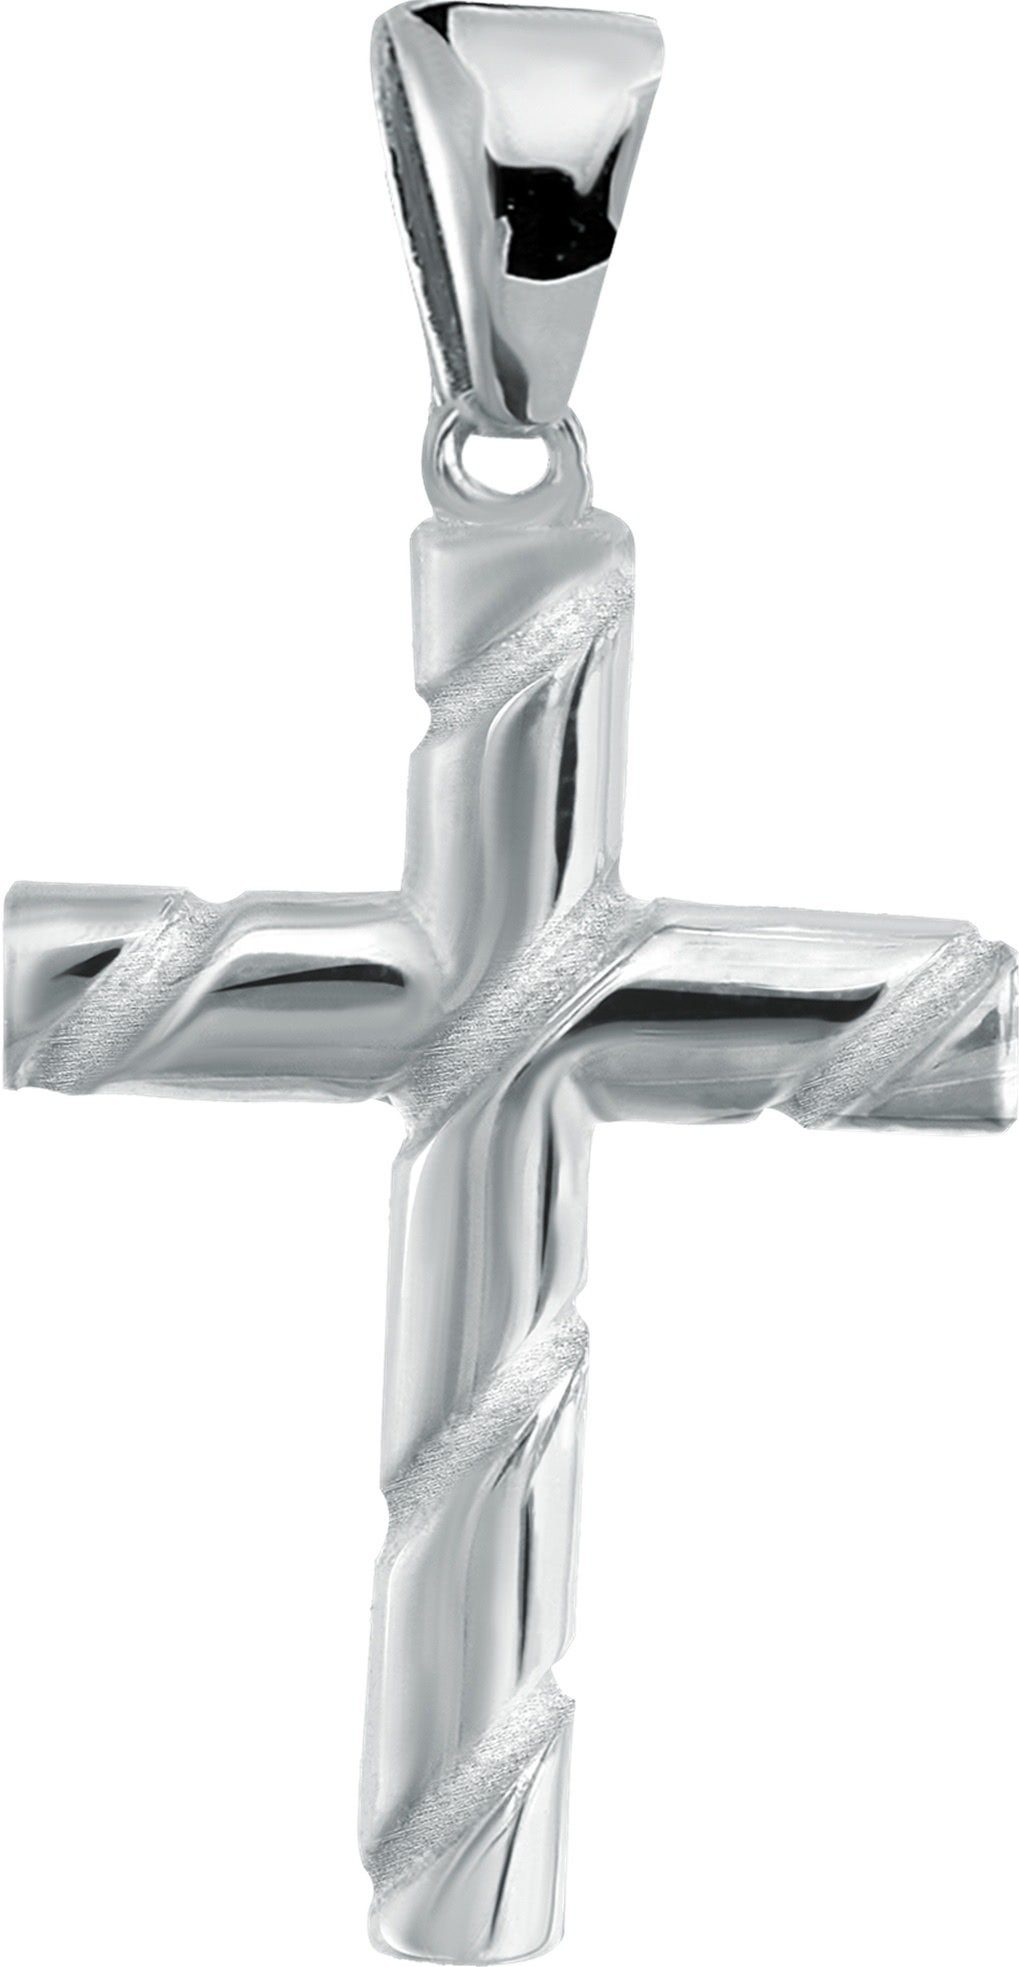 Balia Kettenanhänger Balia Kettenanhänger für Damen 925, Kettenanhänger ca. 3cm, 925 Sterling Silber (Kreuz) | Kettenanhänger